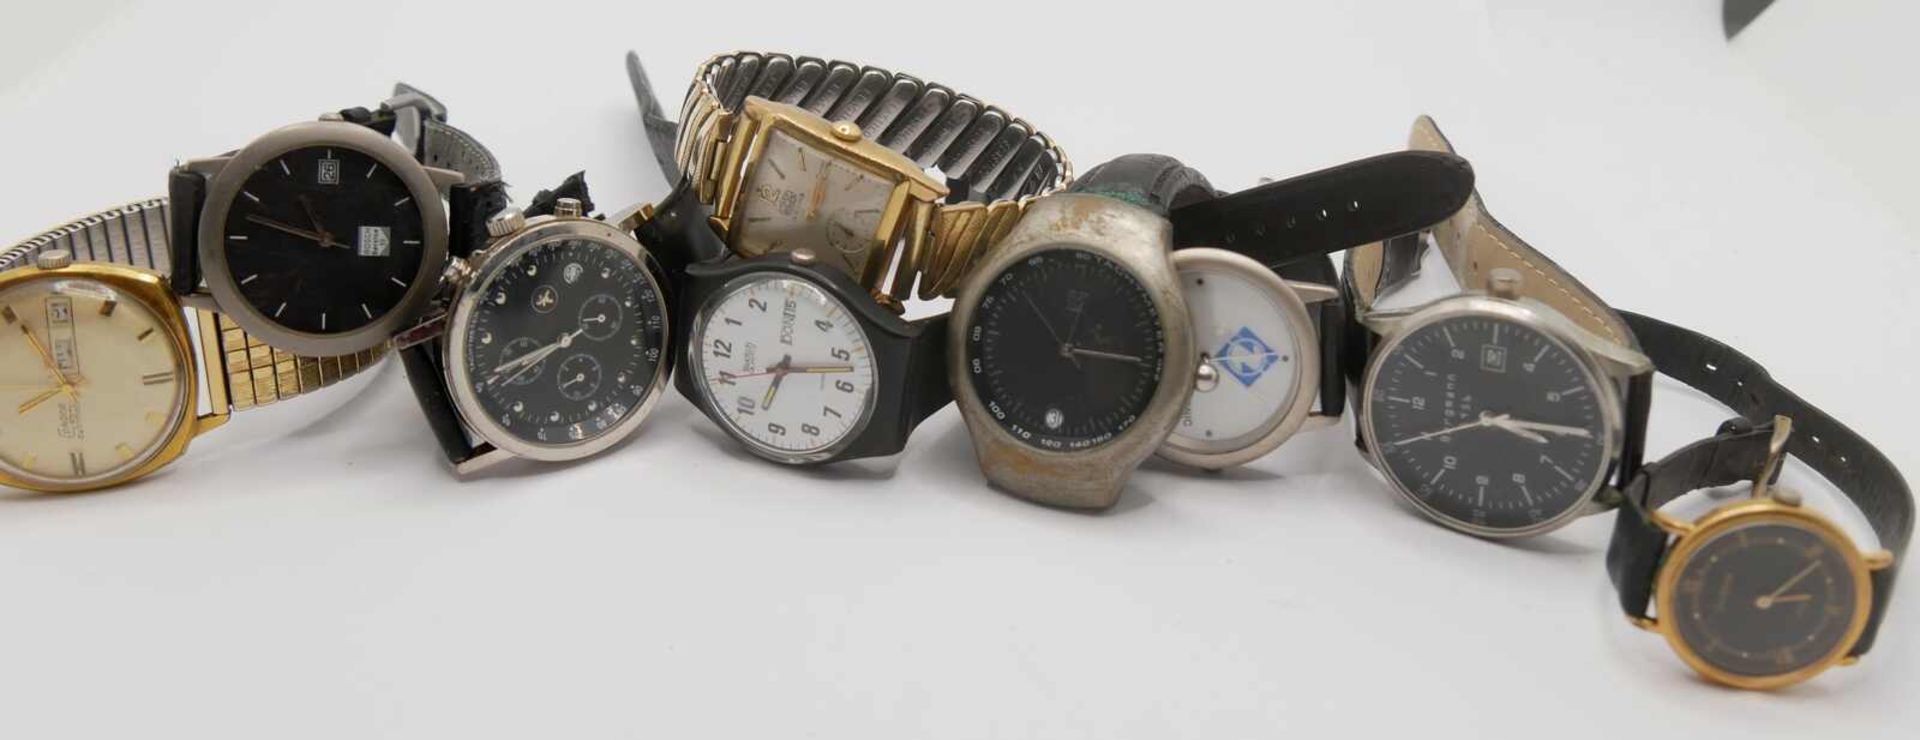 Lot Herren Armbanduhren, verschiedene Modelle. Funktion nicht geprüft. Bitte besichtigen